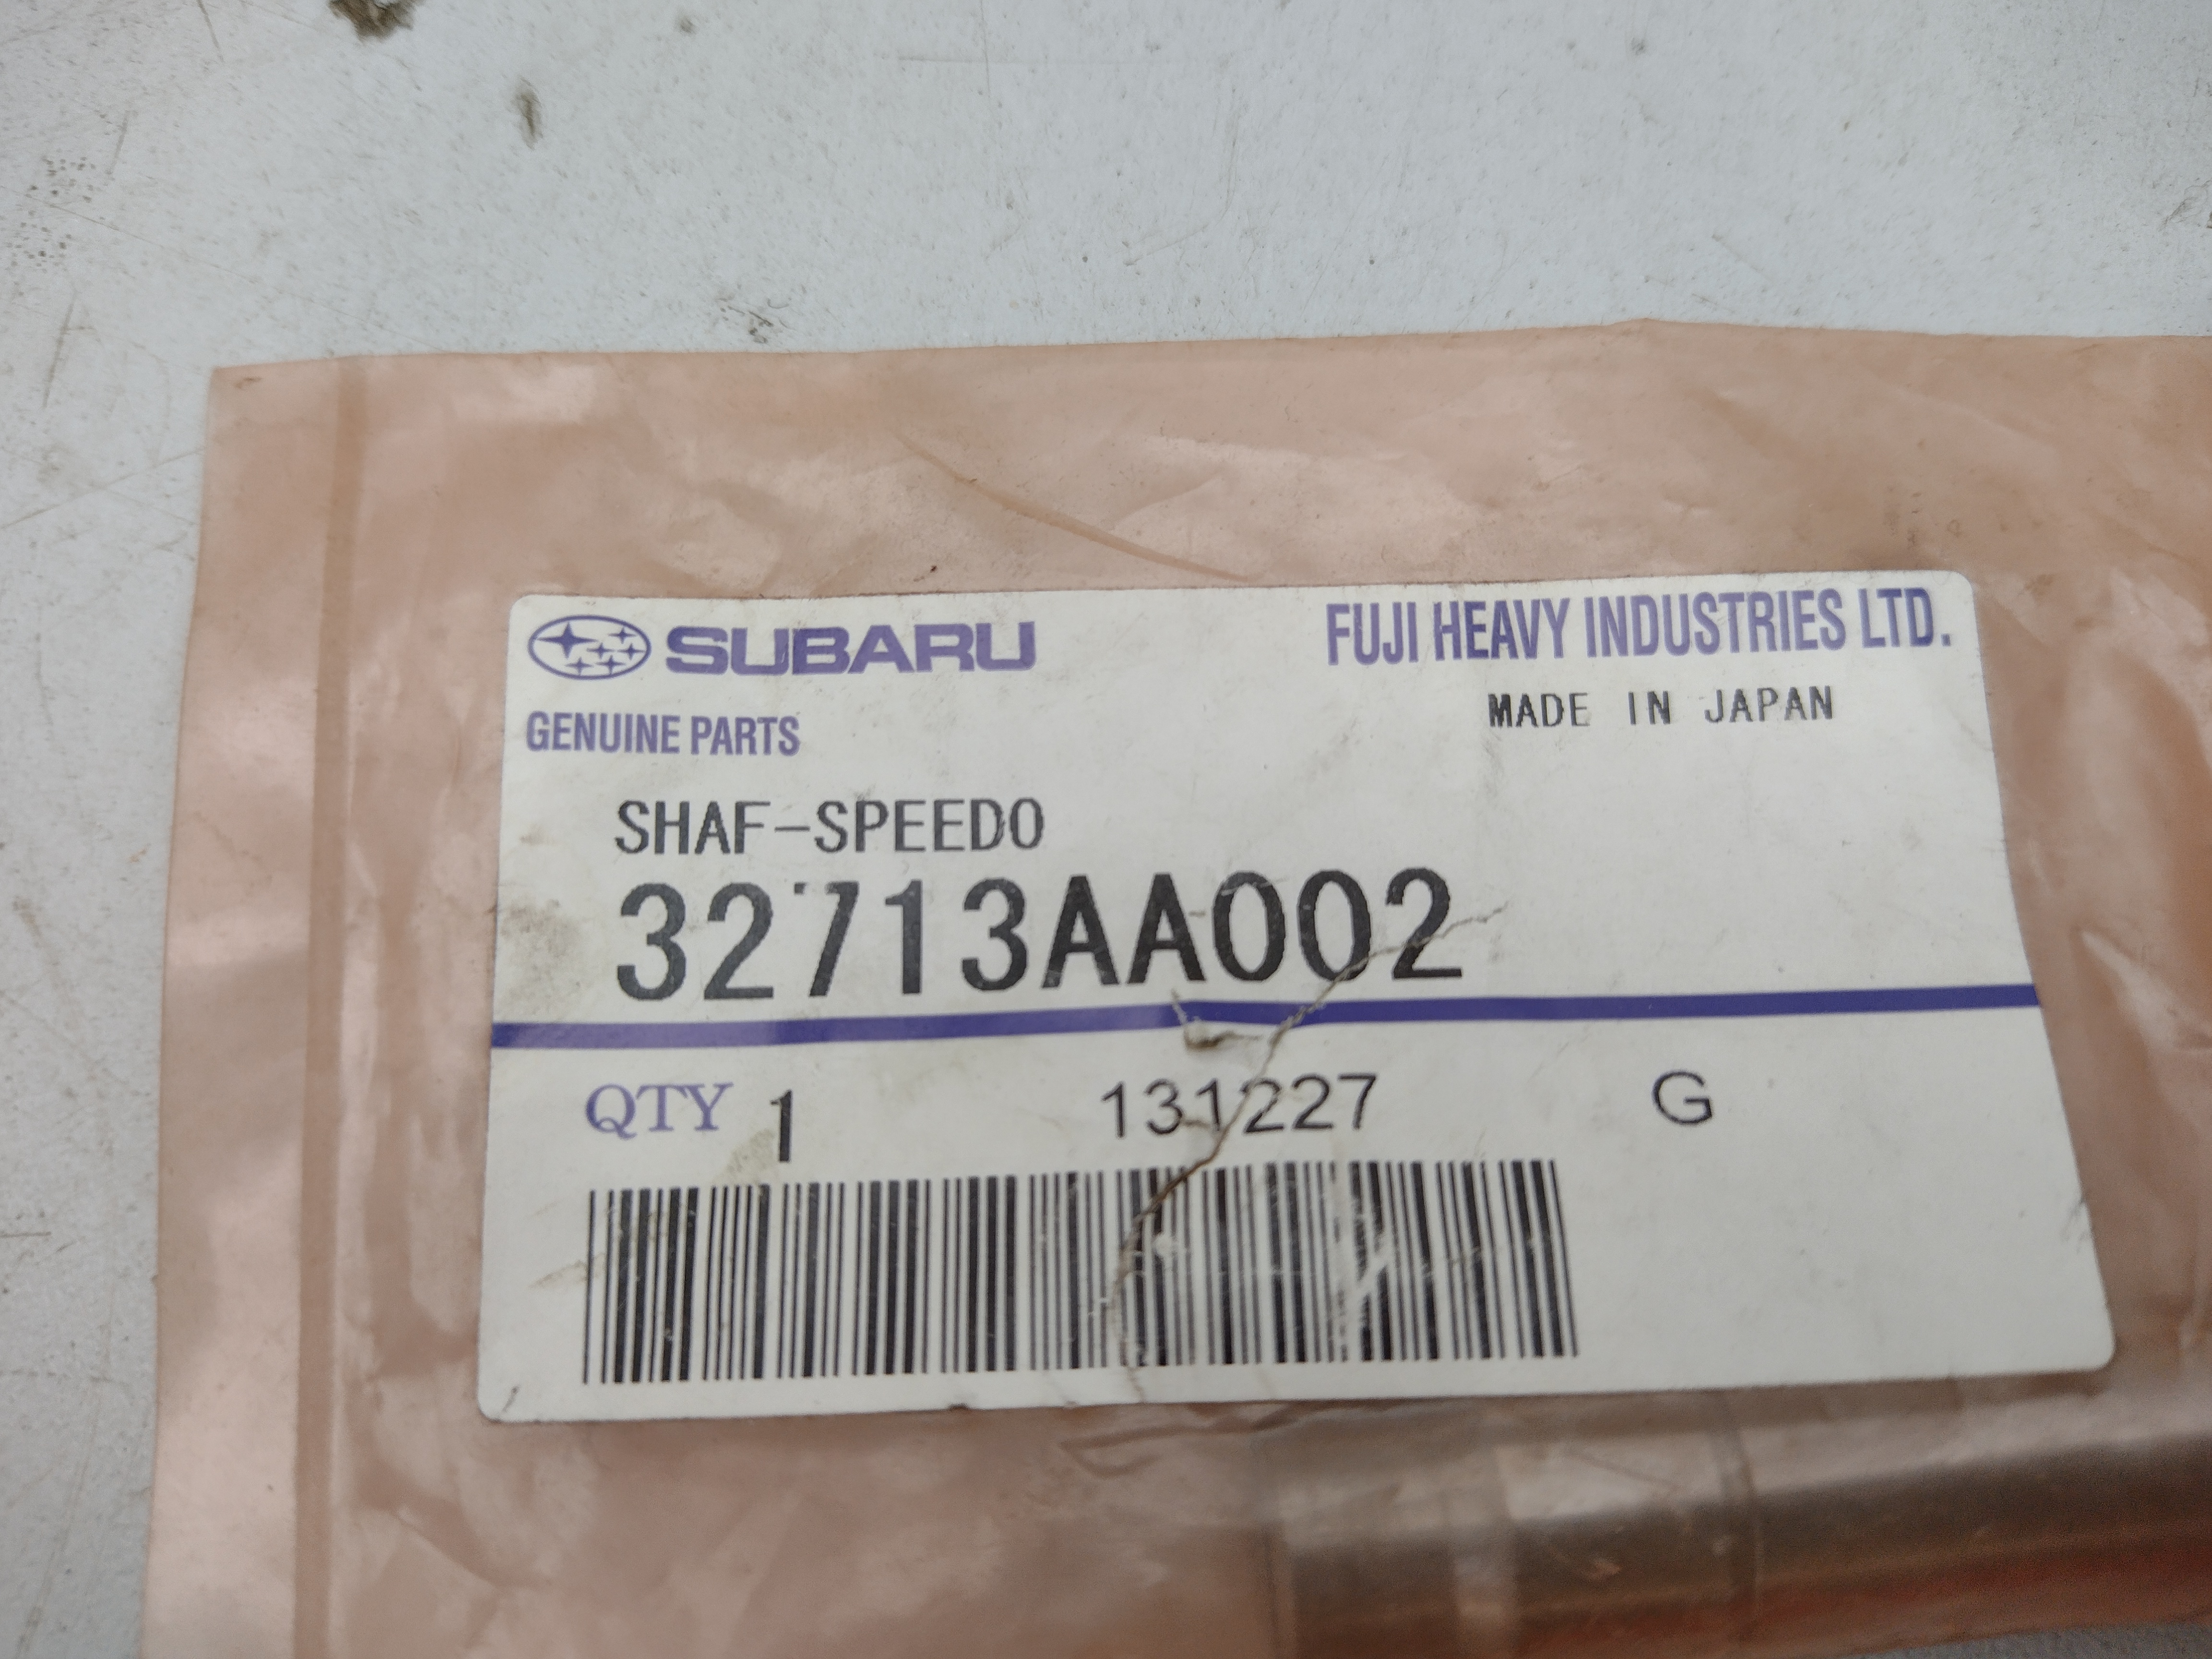  Shaft Speedometer Führung Geschwindigkeitssensor 32713AA002 für Subaru Impreza Legacy Forester BAJA XT WRX